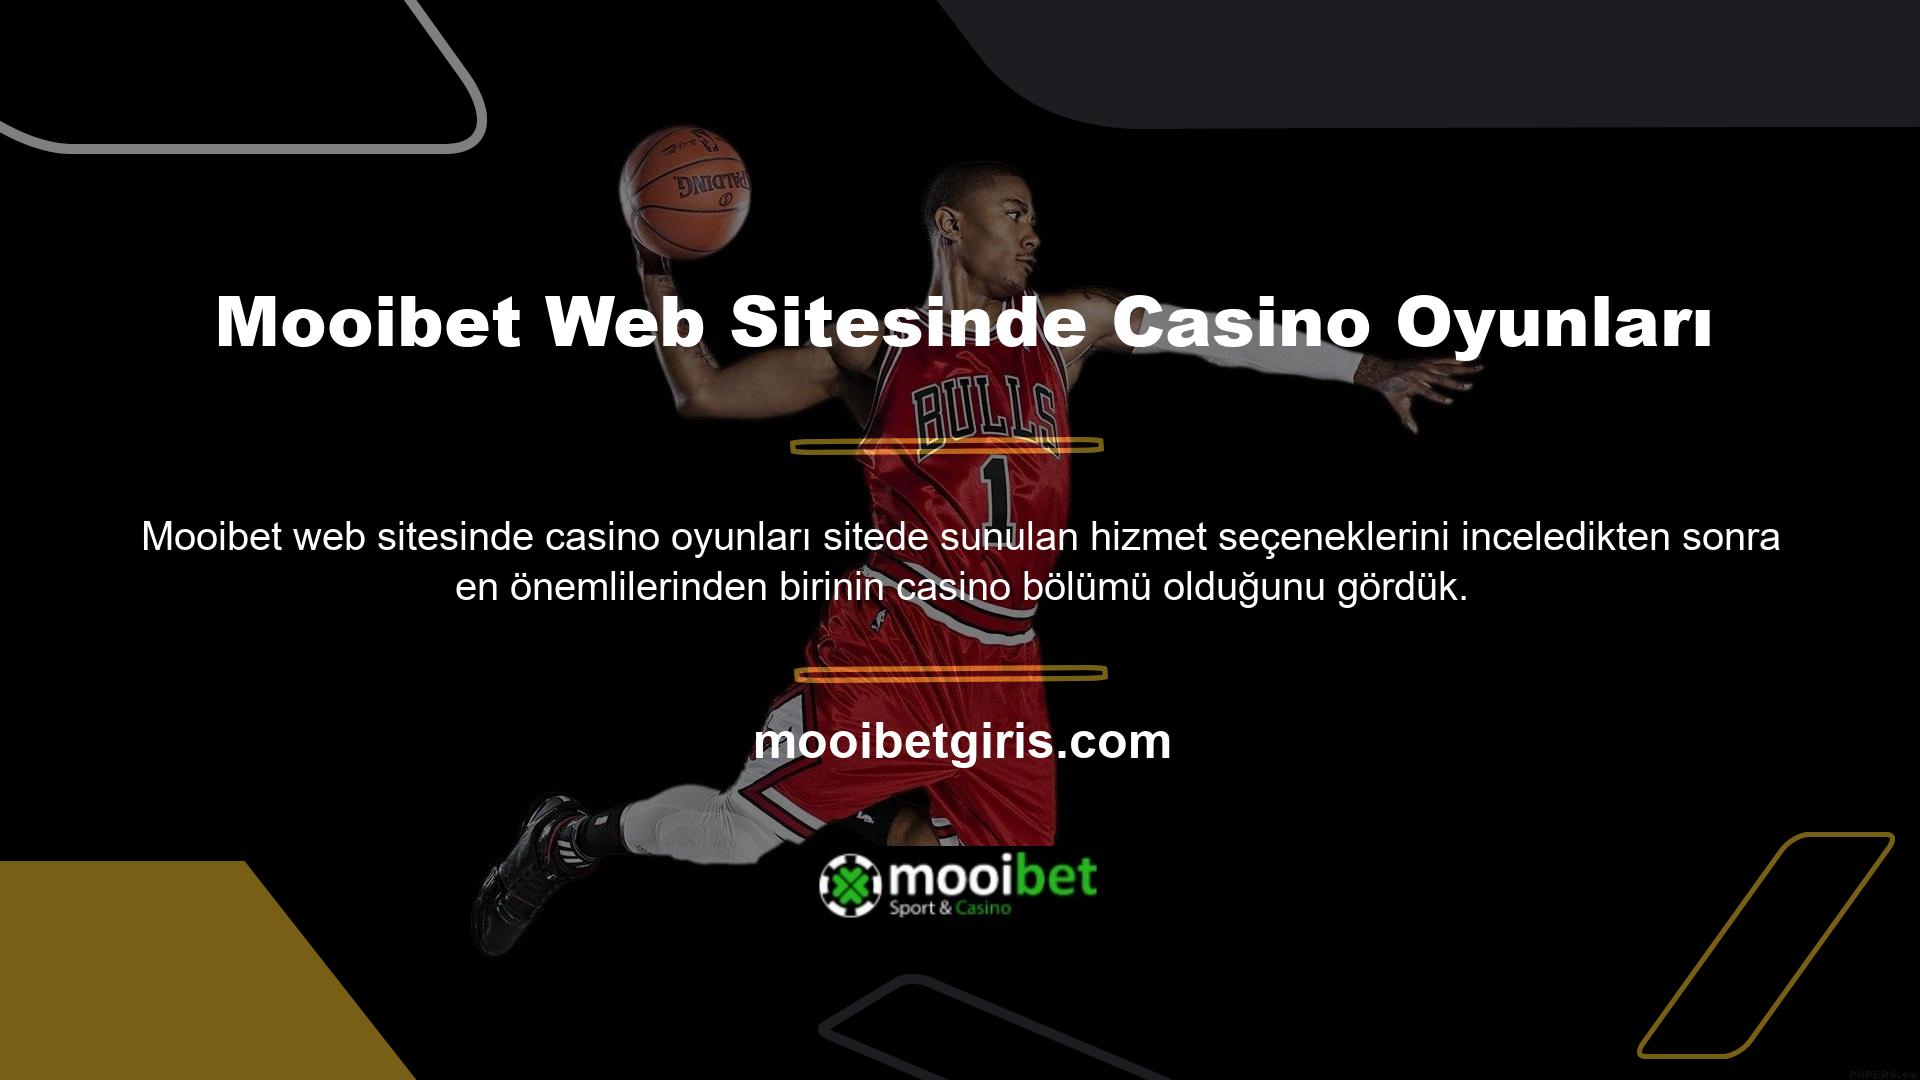 Sitede canlı oyun, casino ve poker seçeneklerinin sunulduğu Mooibet sitesinde casino oyunlarına göz atabilirsiniz